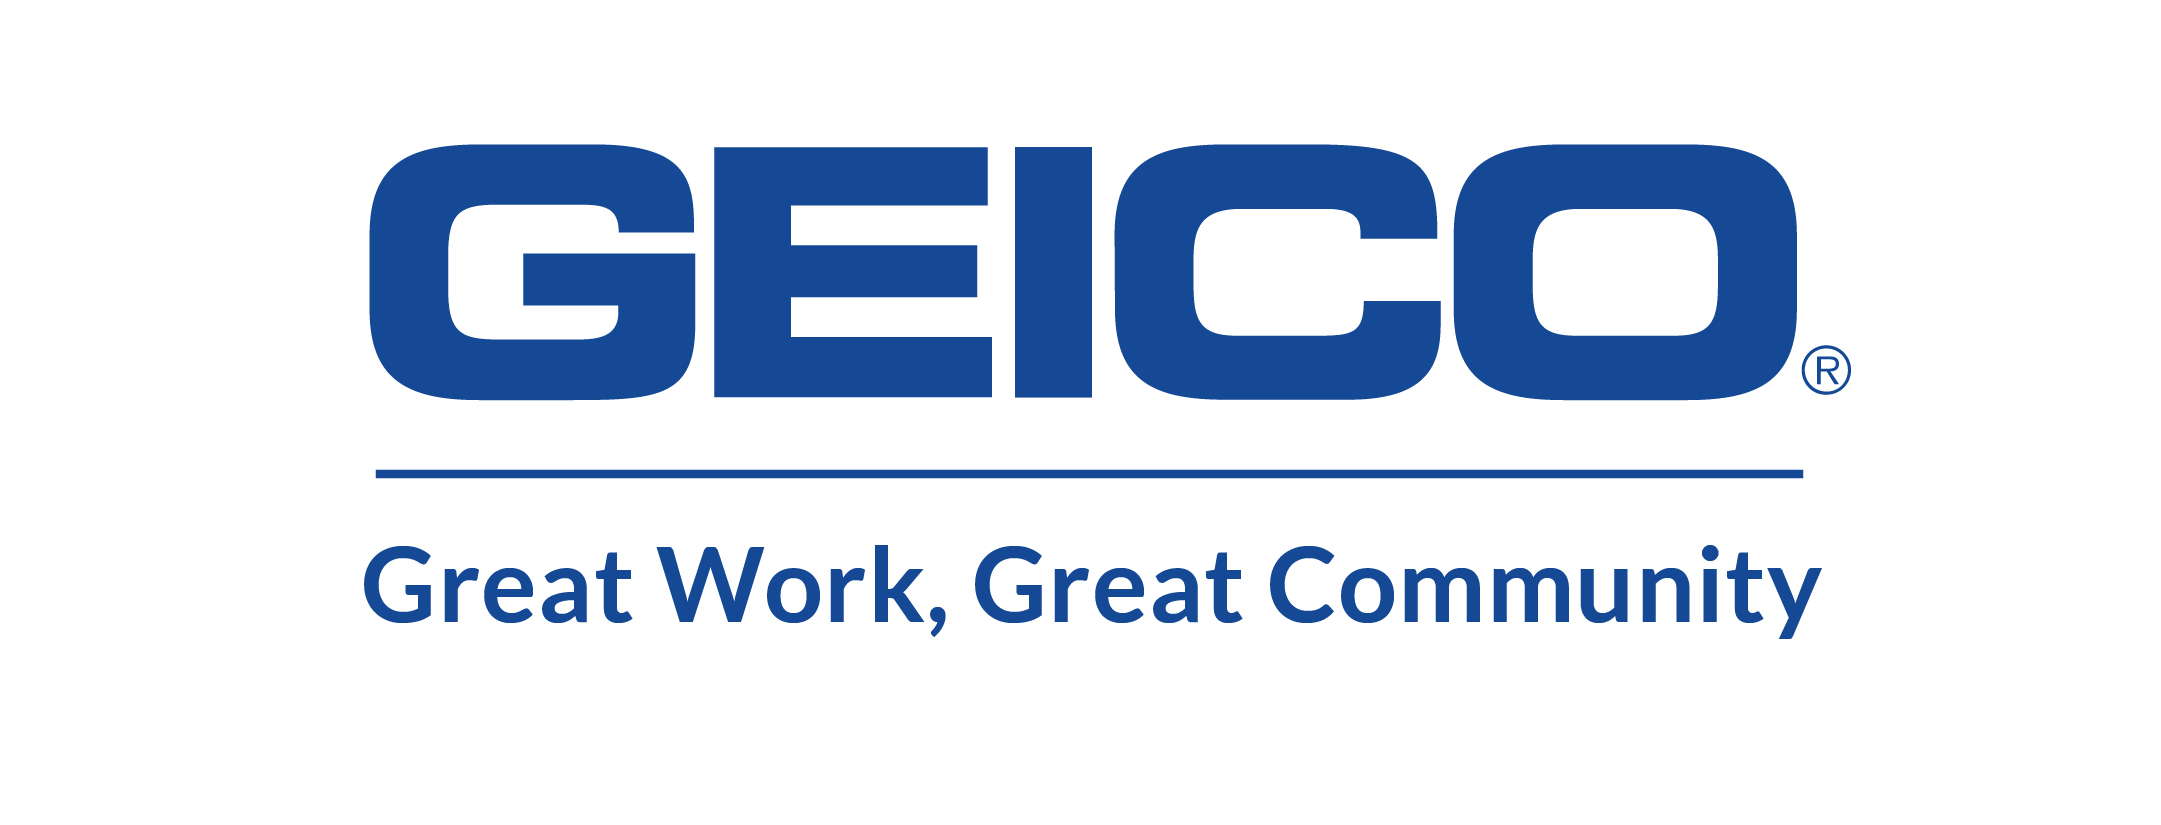 3 GEICO Sponsor Logo